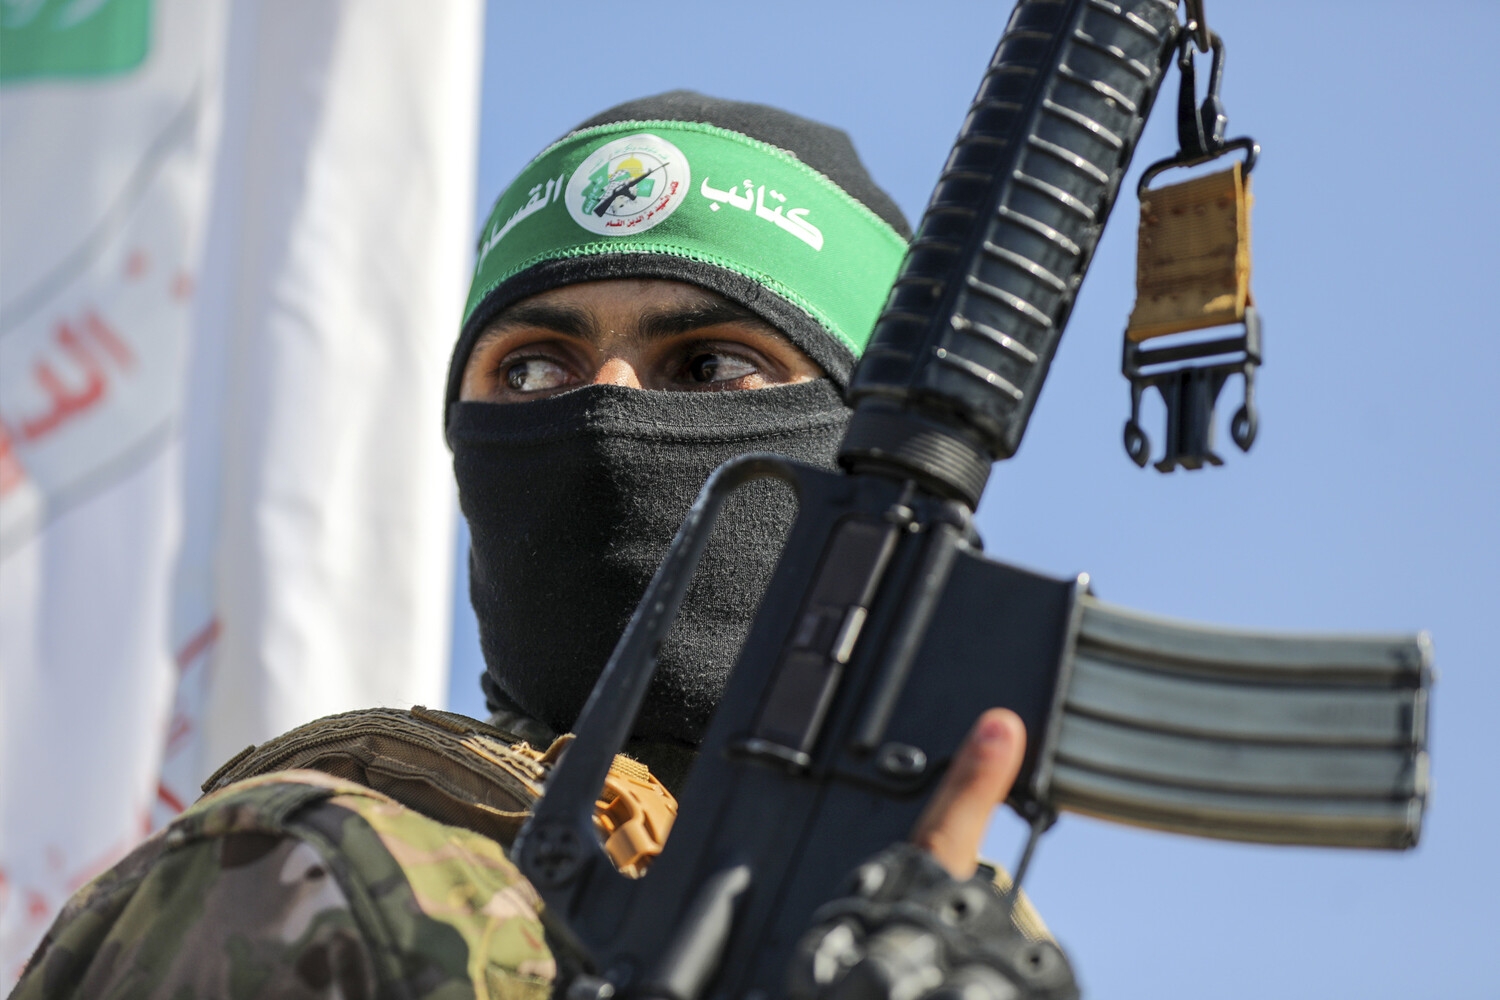 Глава политбюро ХАМАС Хания попросил арабские страны о поставках оружия